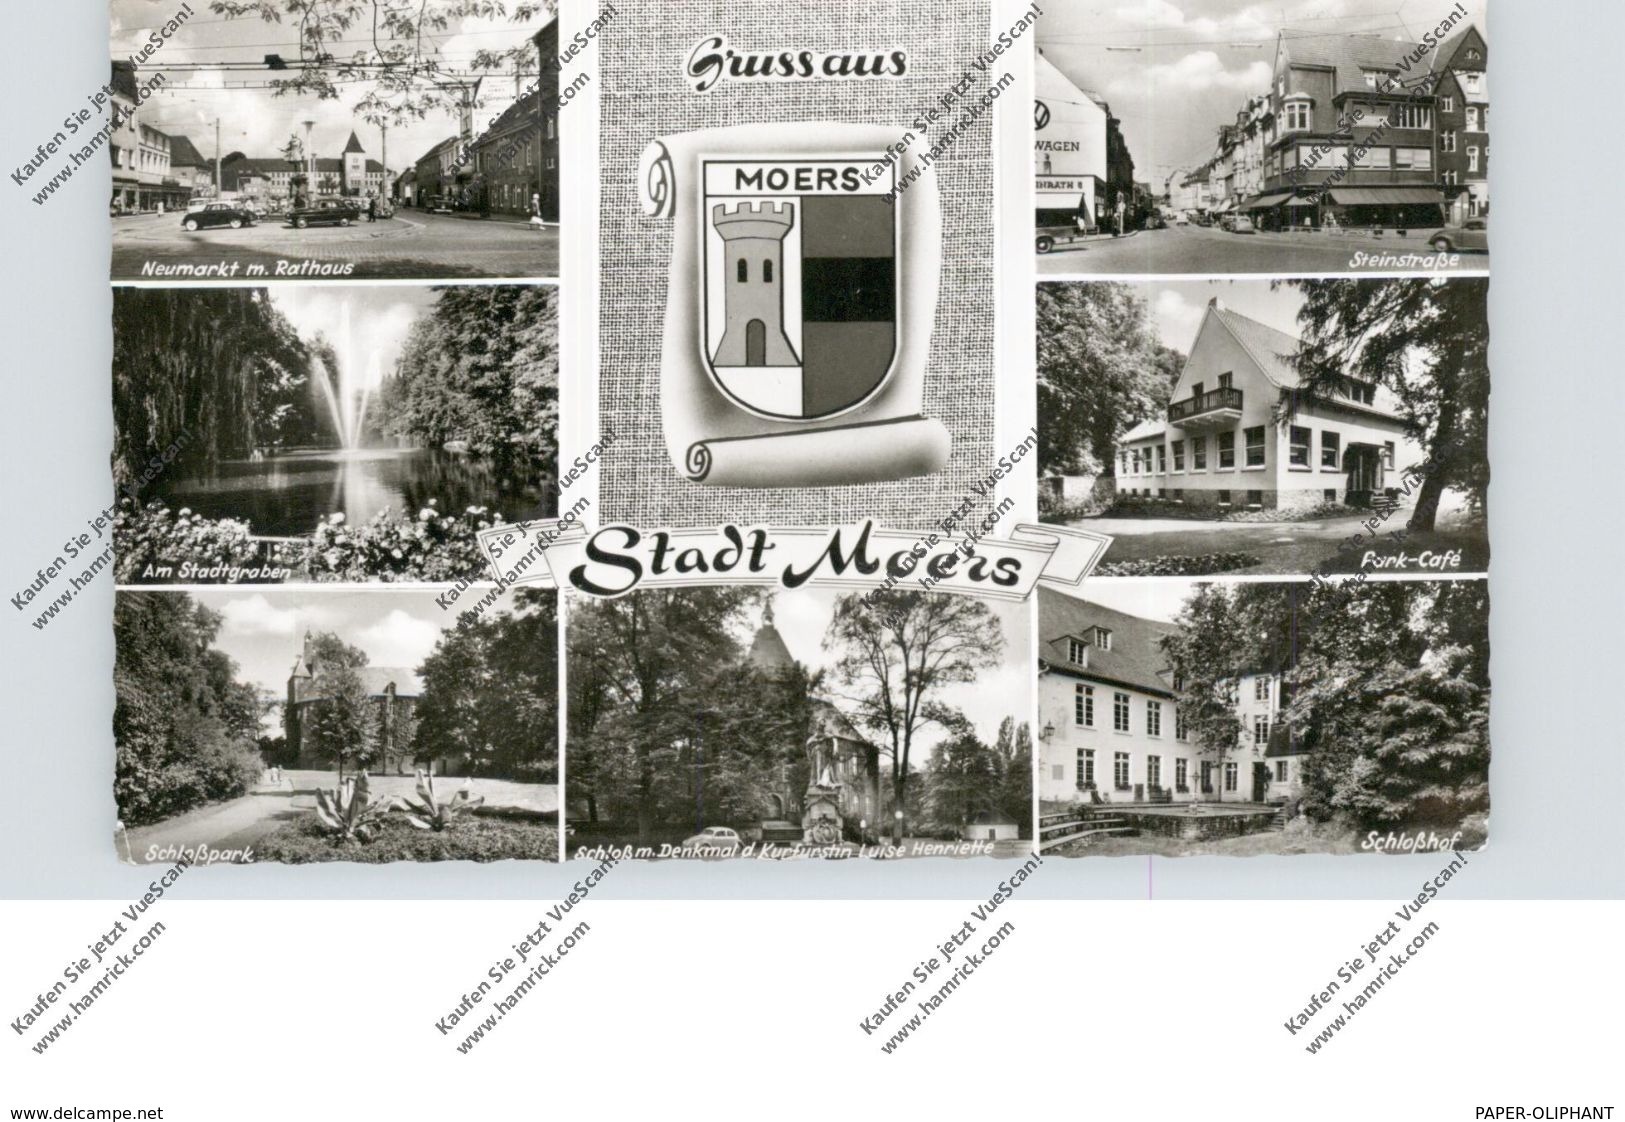 4130 MOERS, Park-Cafe, Steinstrasse, Schloßhof, Denkmal, Neumarkt, Stadtwappen..1965 - Mörs